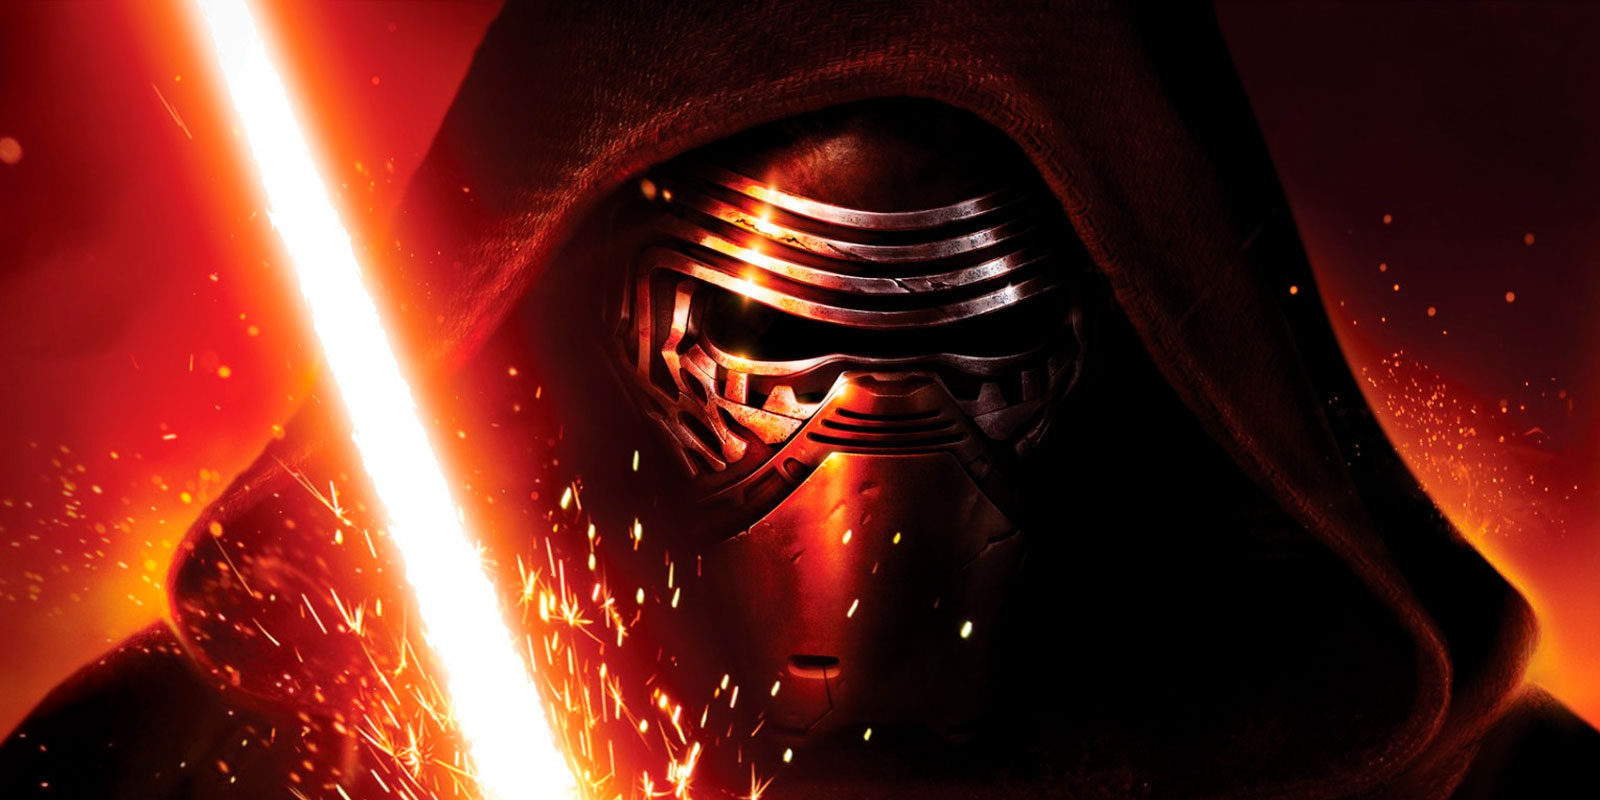 La próxima película de 'Star Wars' visitará España durante el rodaje